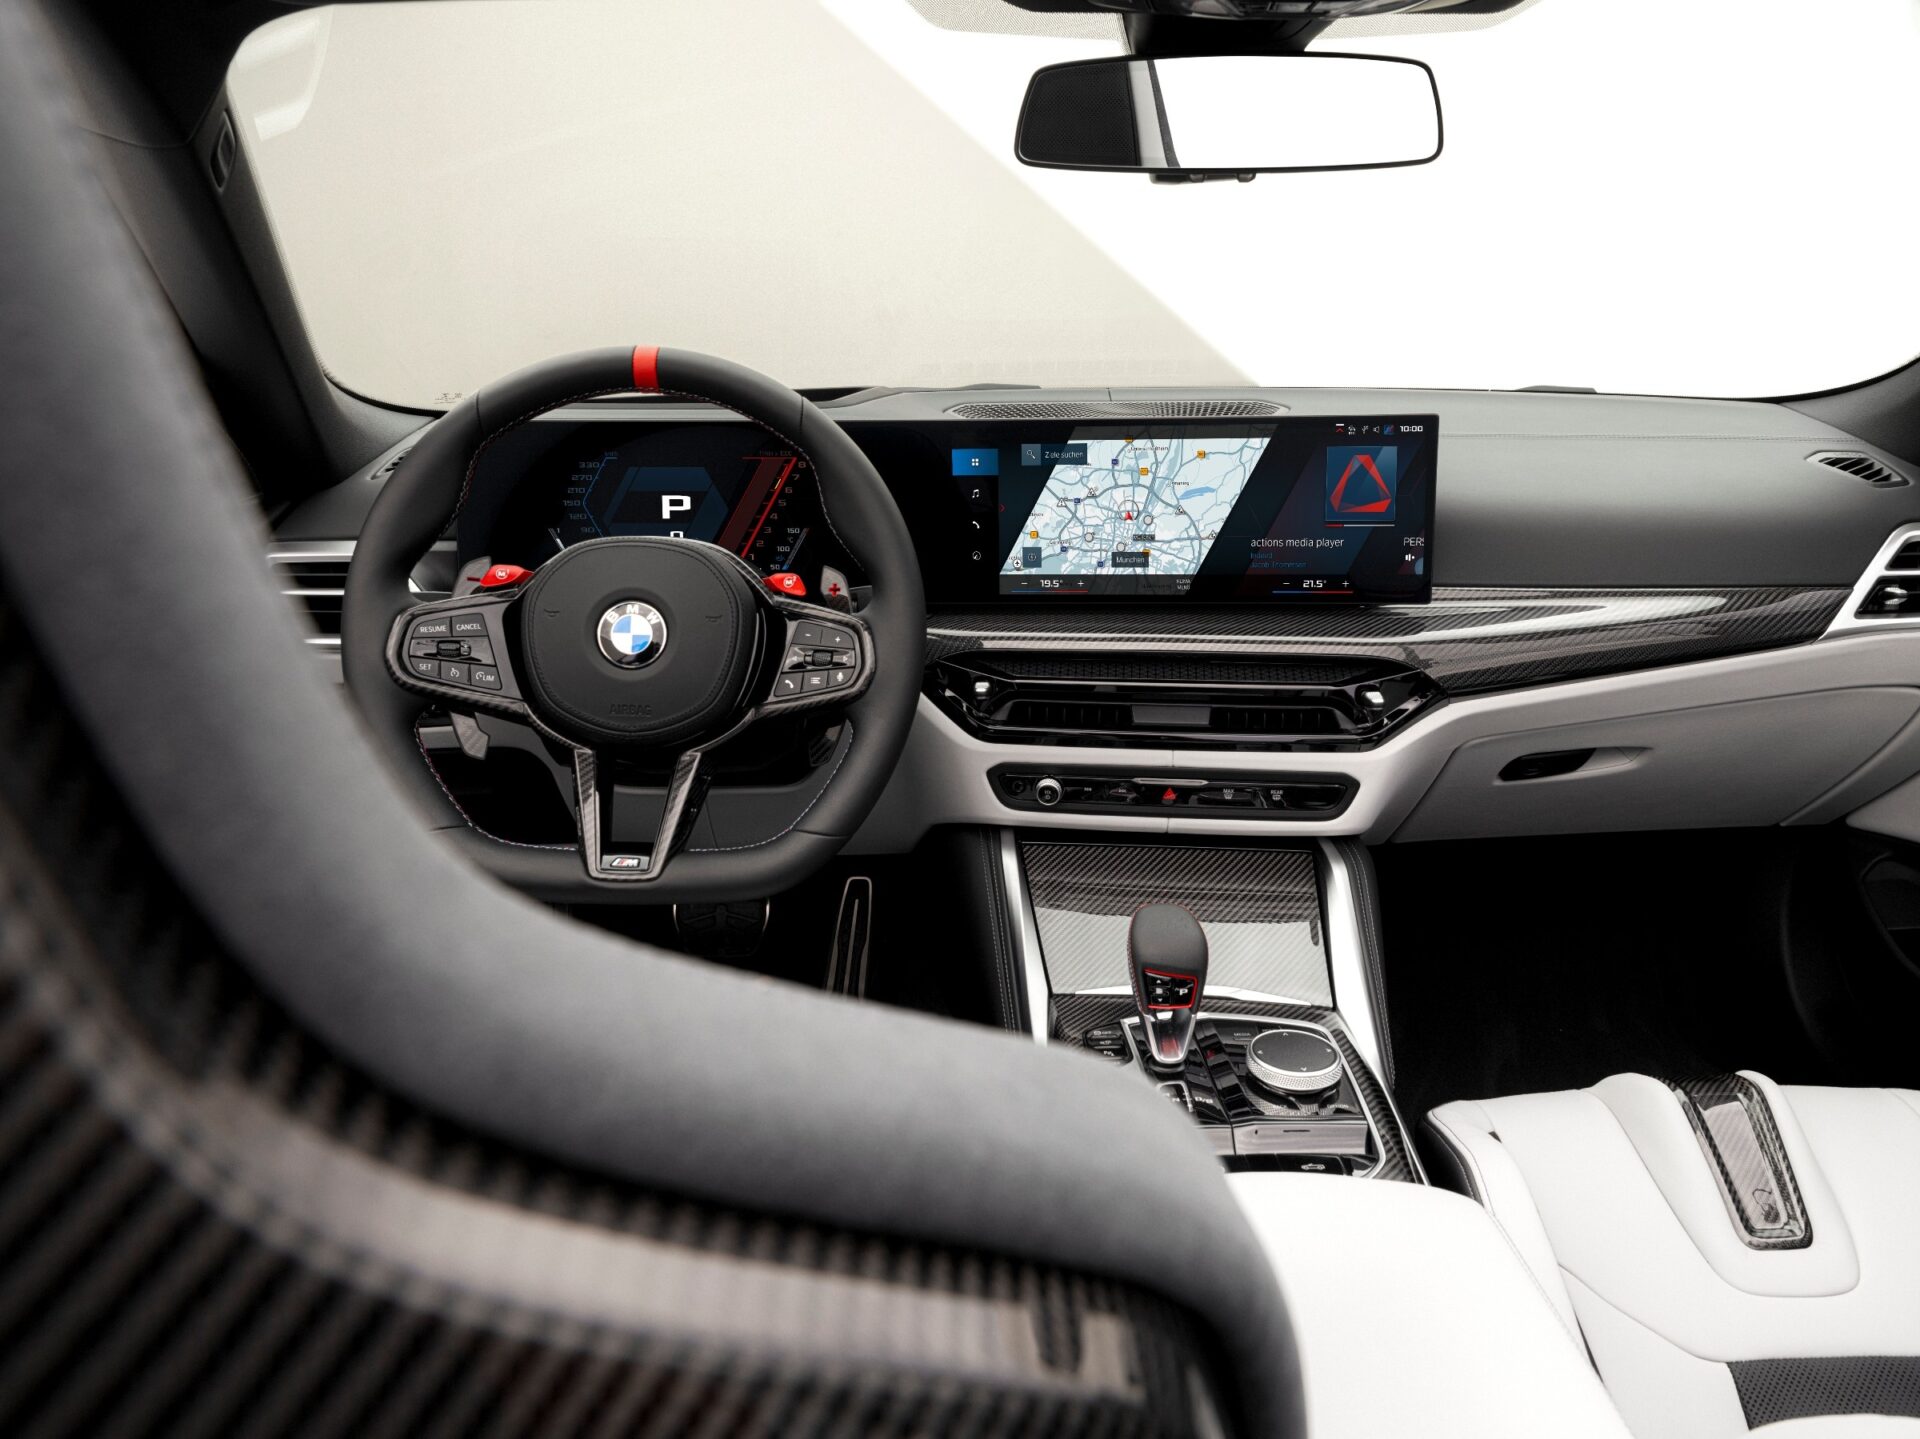 BMW M4 Competition xDrive 2025 года без ремней на 523 лошадиных силы, базовый M4 сохраняет механическую коробку передач